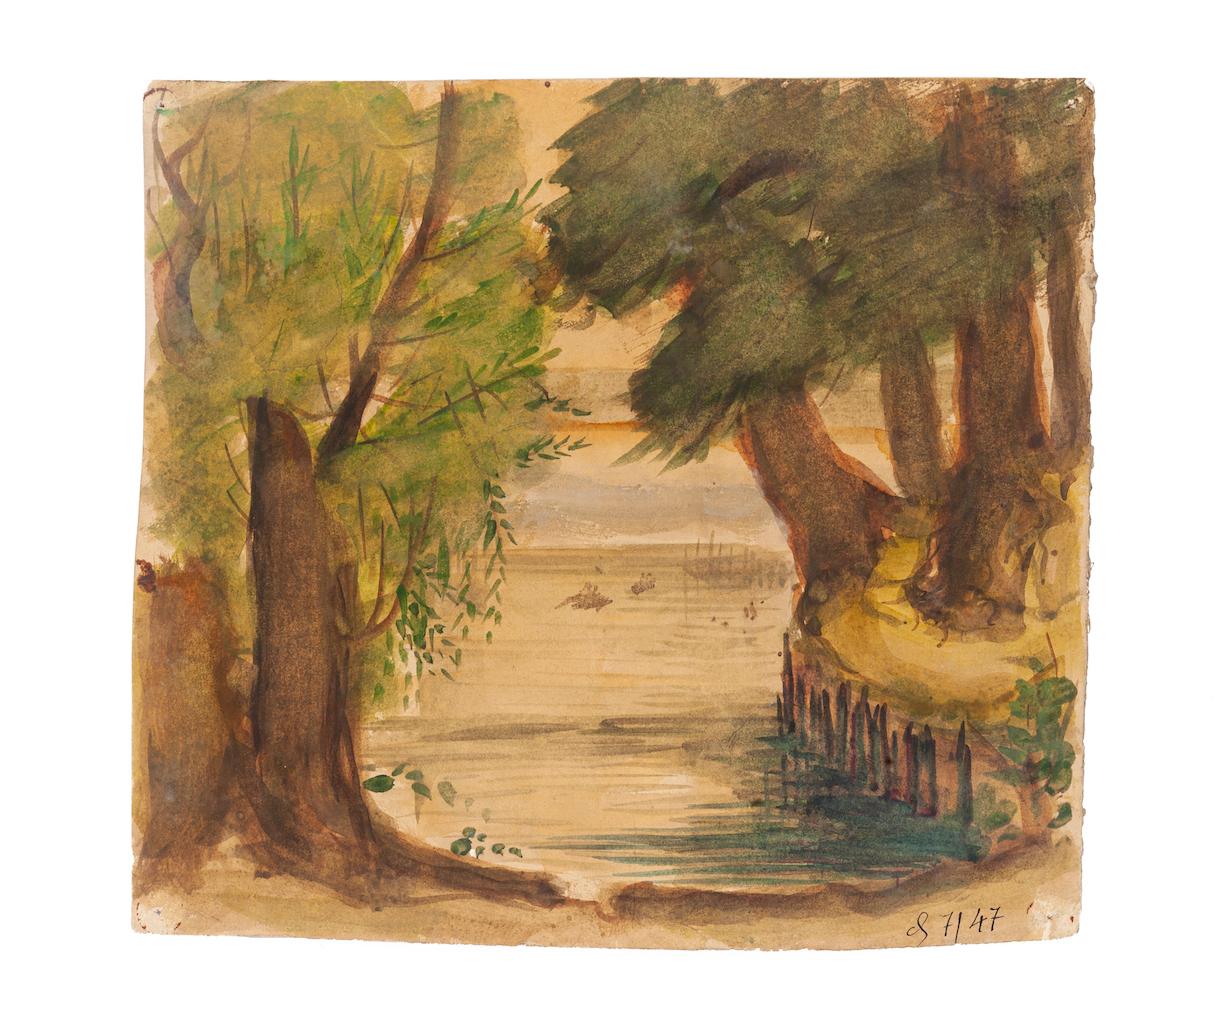 Landscape - Original Watercolor on Cardboard by Jean Delpech - 1947